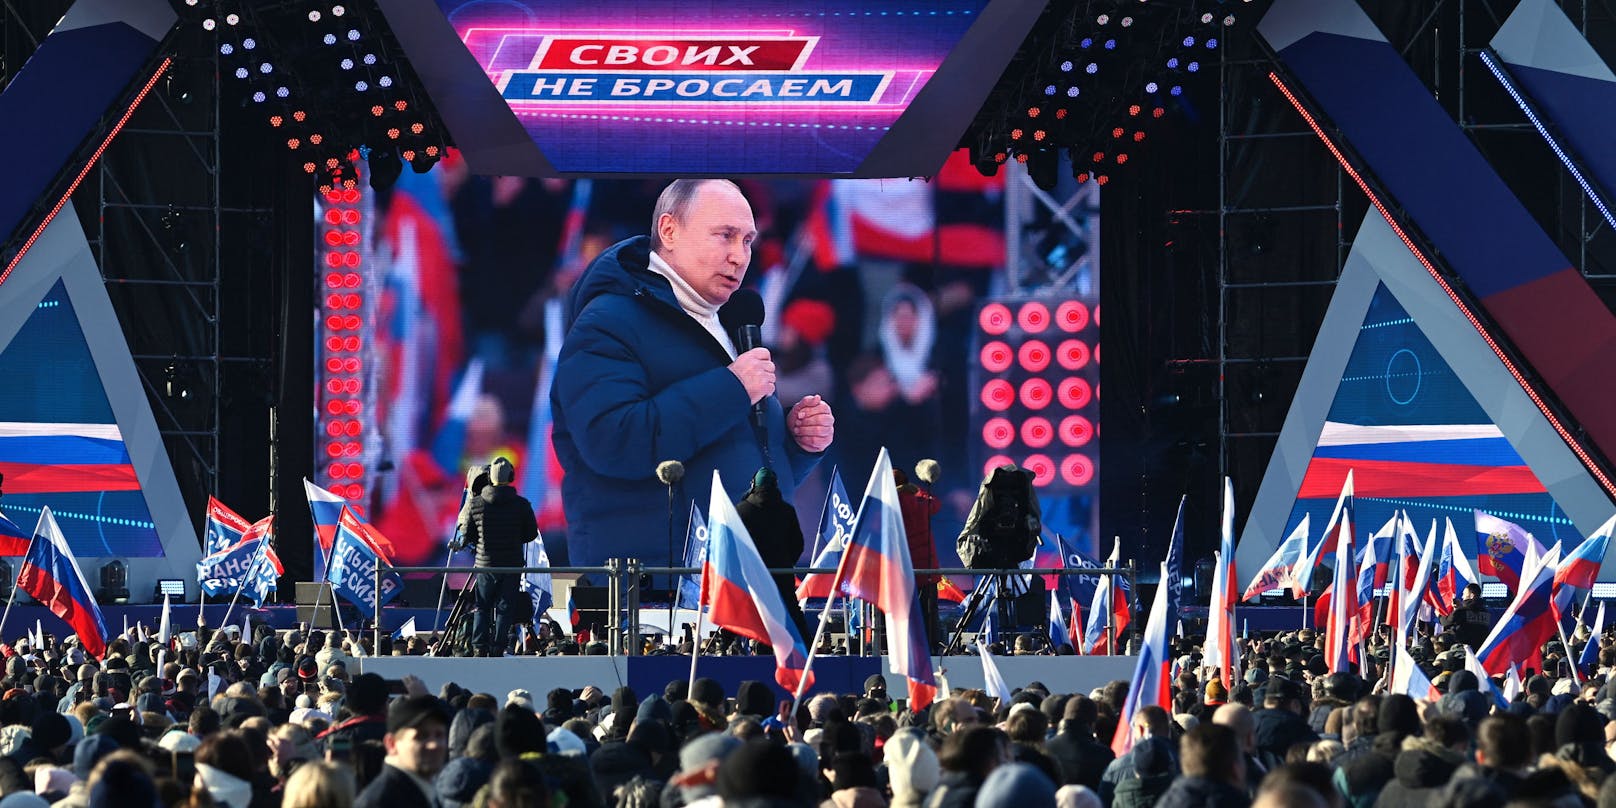 Wladimir Putin sprach im Luschniki-Stadion in Moskau vor tausenden Menschen. Plötzlich verschwand der Staatschef für mehrere Minuten aus dem Bild.